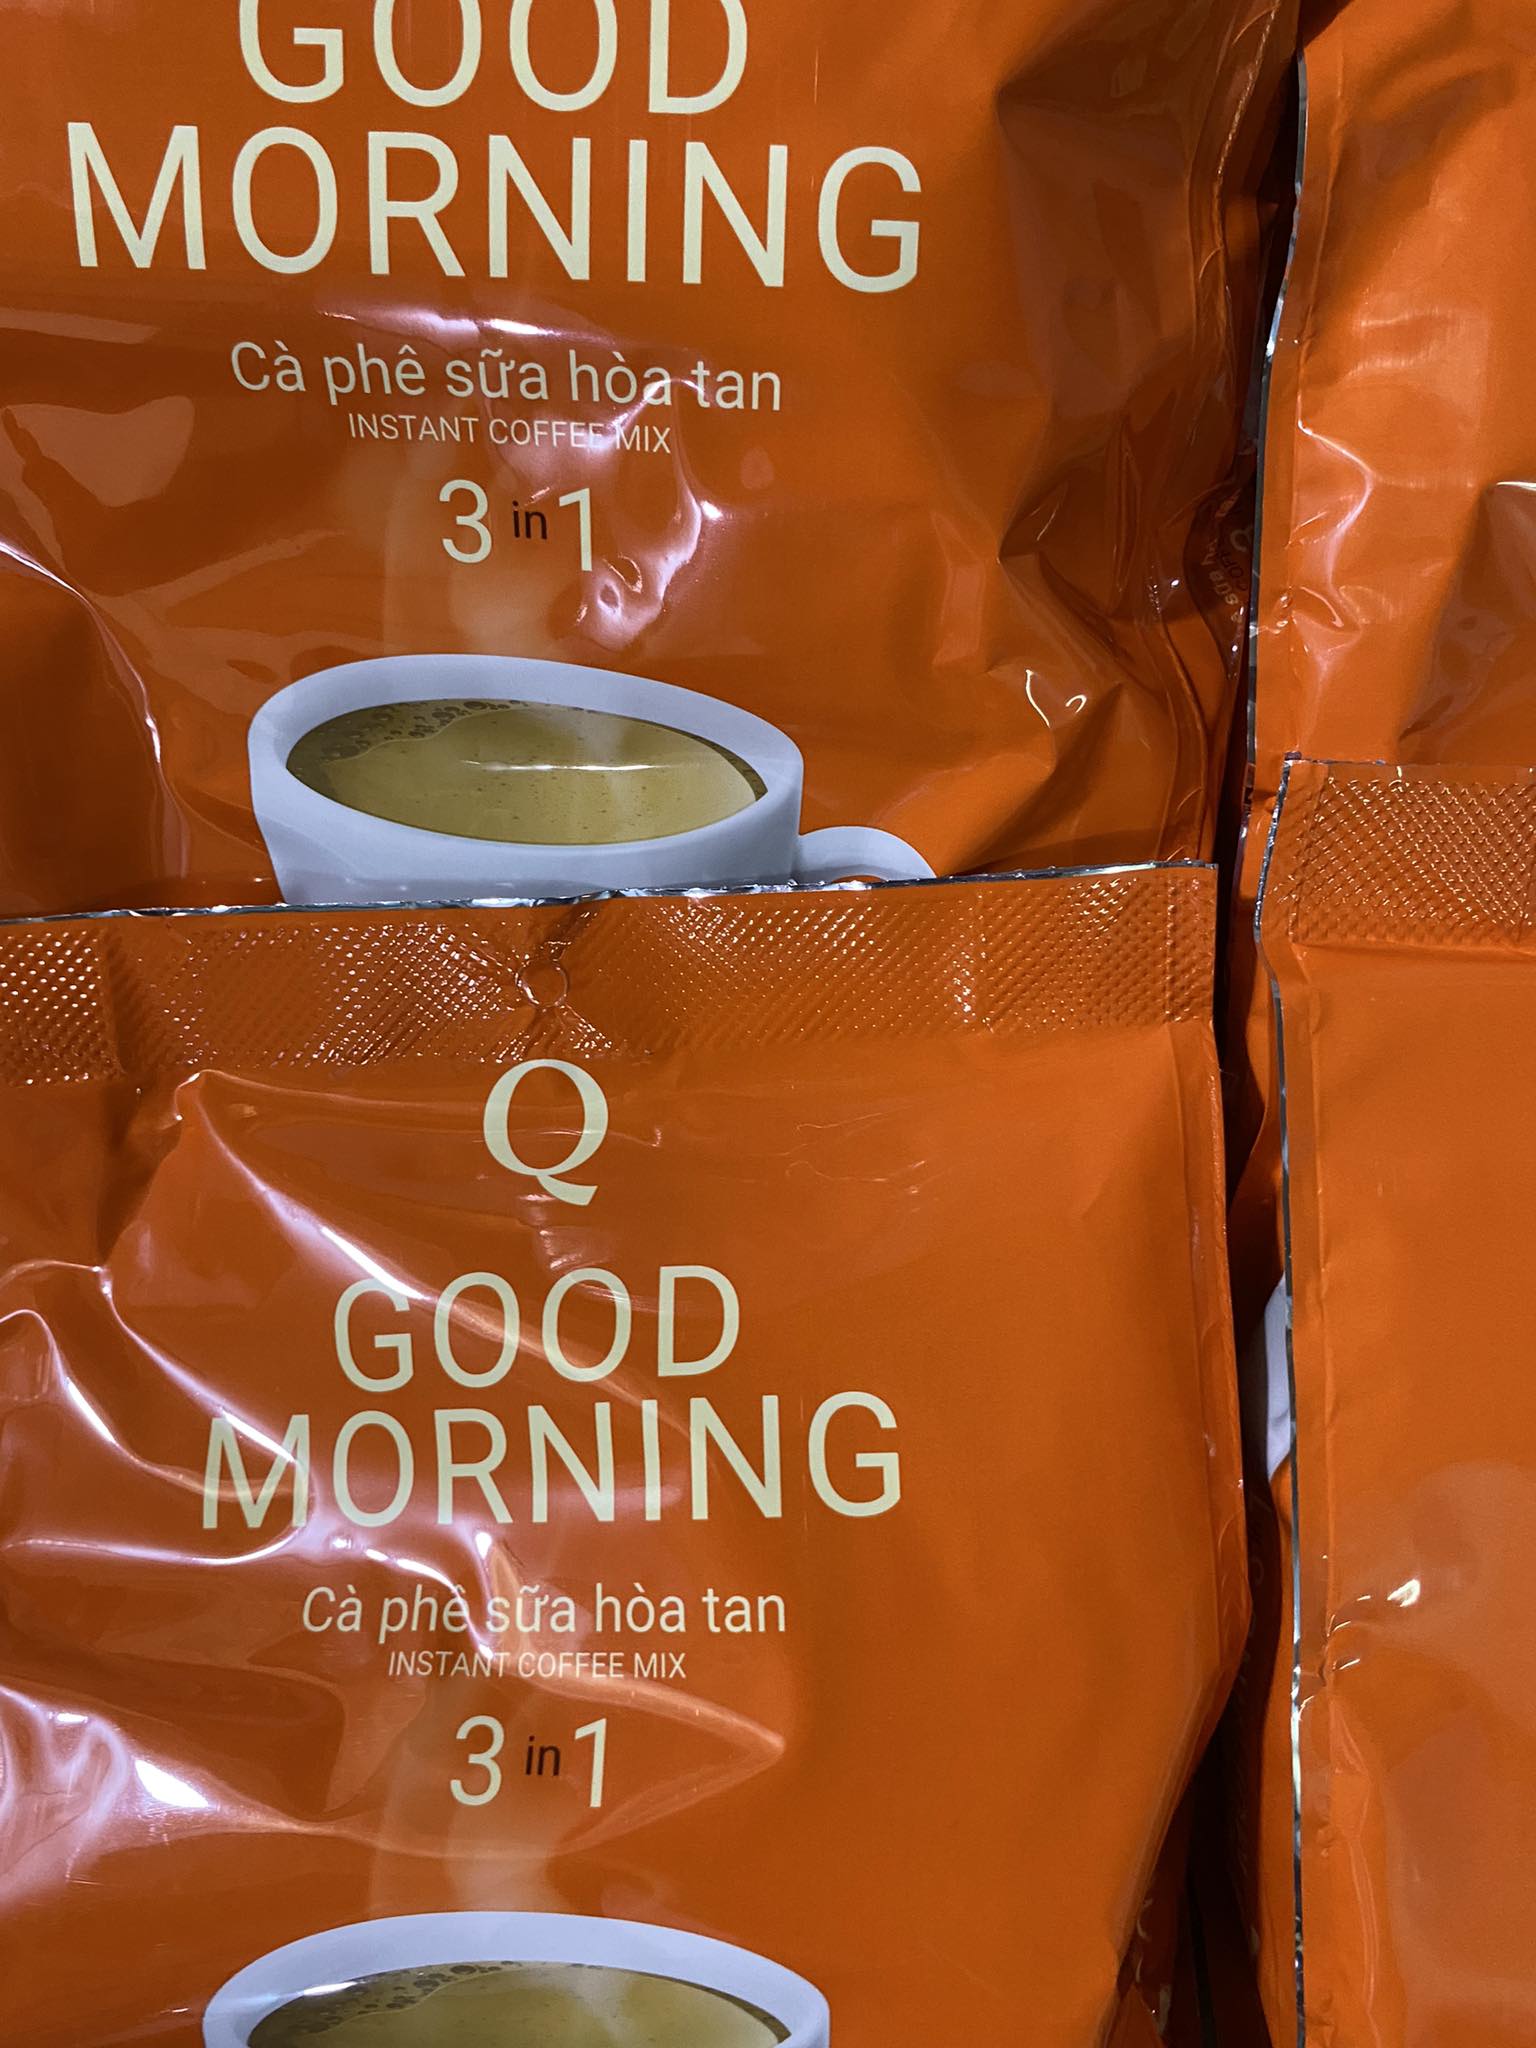 Cà phê sữa Trần Quang Good Morning 480g - 960g 24 gói x20g